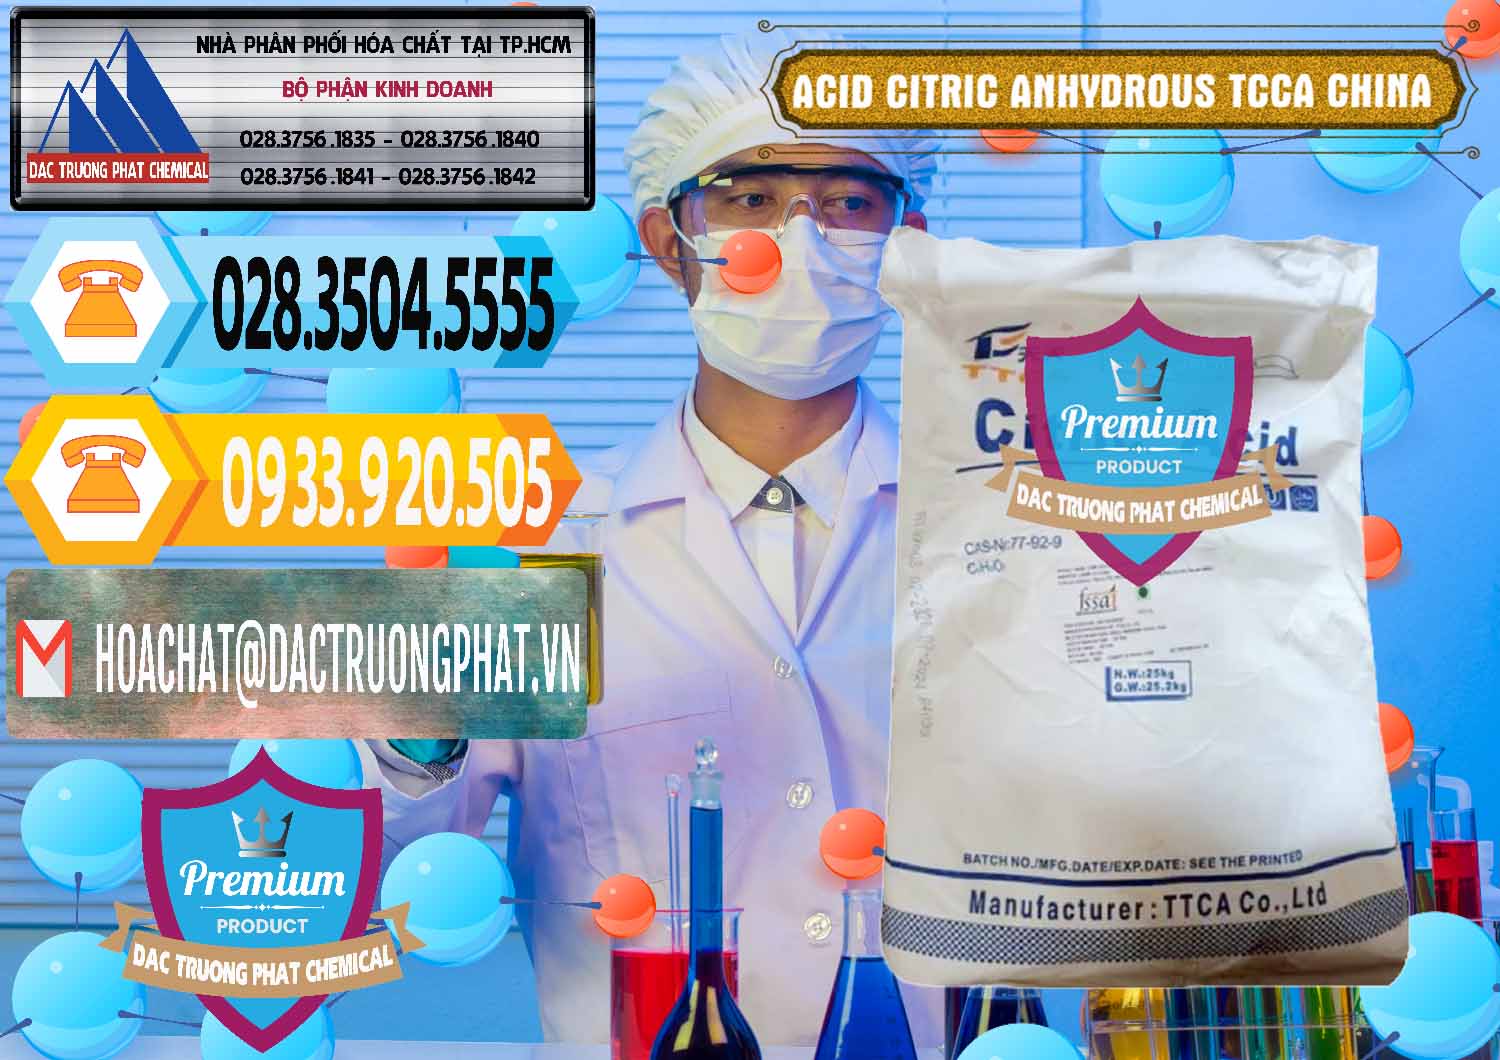 Cty chuyên cung ứng & bán Acid Citric - Axit Citric Anhydrous TCCA Trung Quốc China - 0442 - Nơi cung ứng và phân phối hóa chất tại TP.HCM - hoachattayrua.net